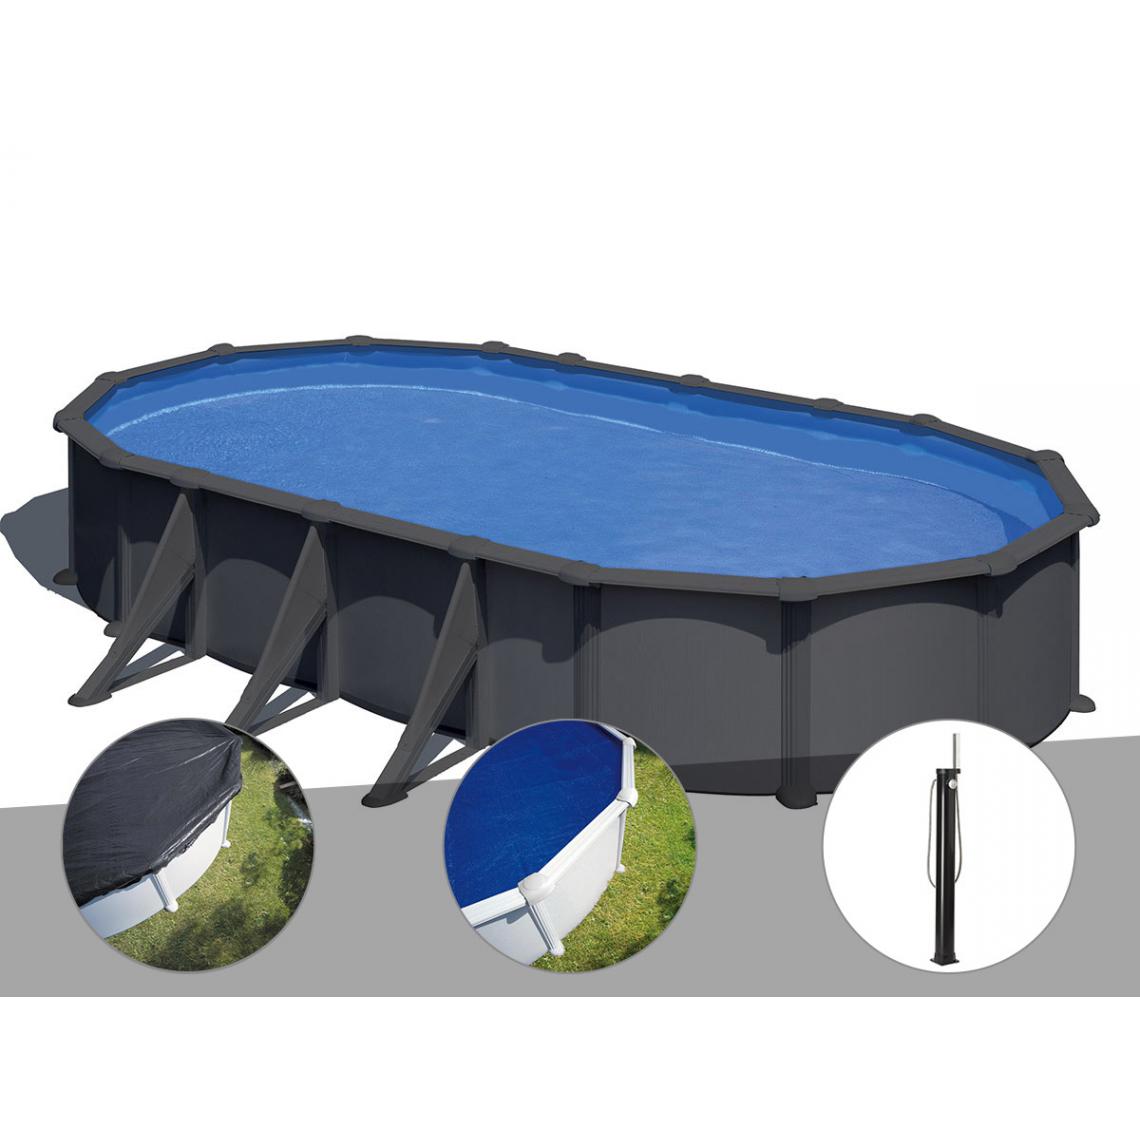 Gre - Kit piscine acier gris anthracite Gré Juni ovale 7,44 x 3,99 x 1,32 m + Bâche d'hivernage + Bâche à bulles + Douche - Piscines acier et résine